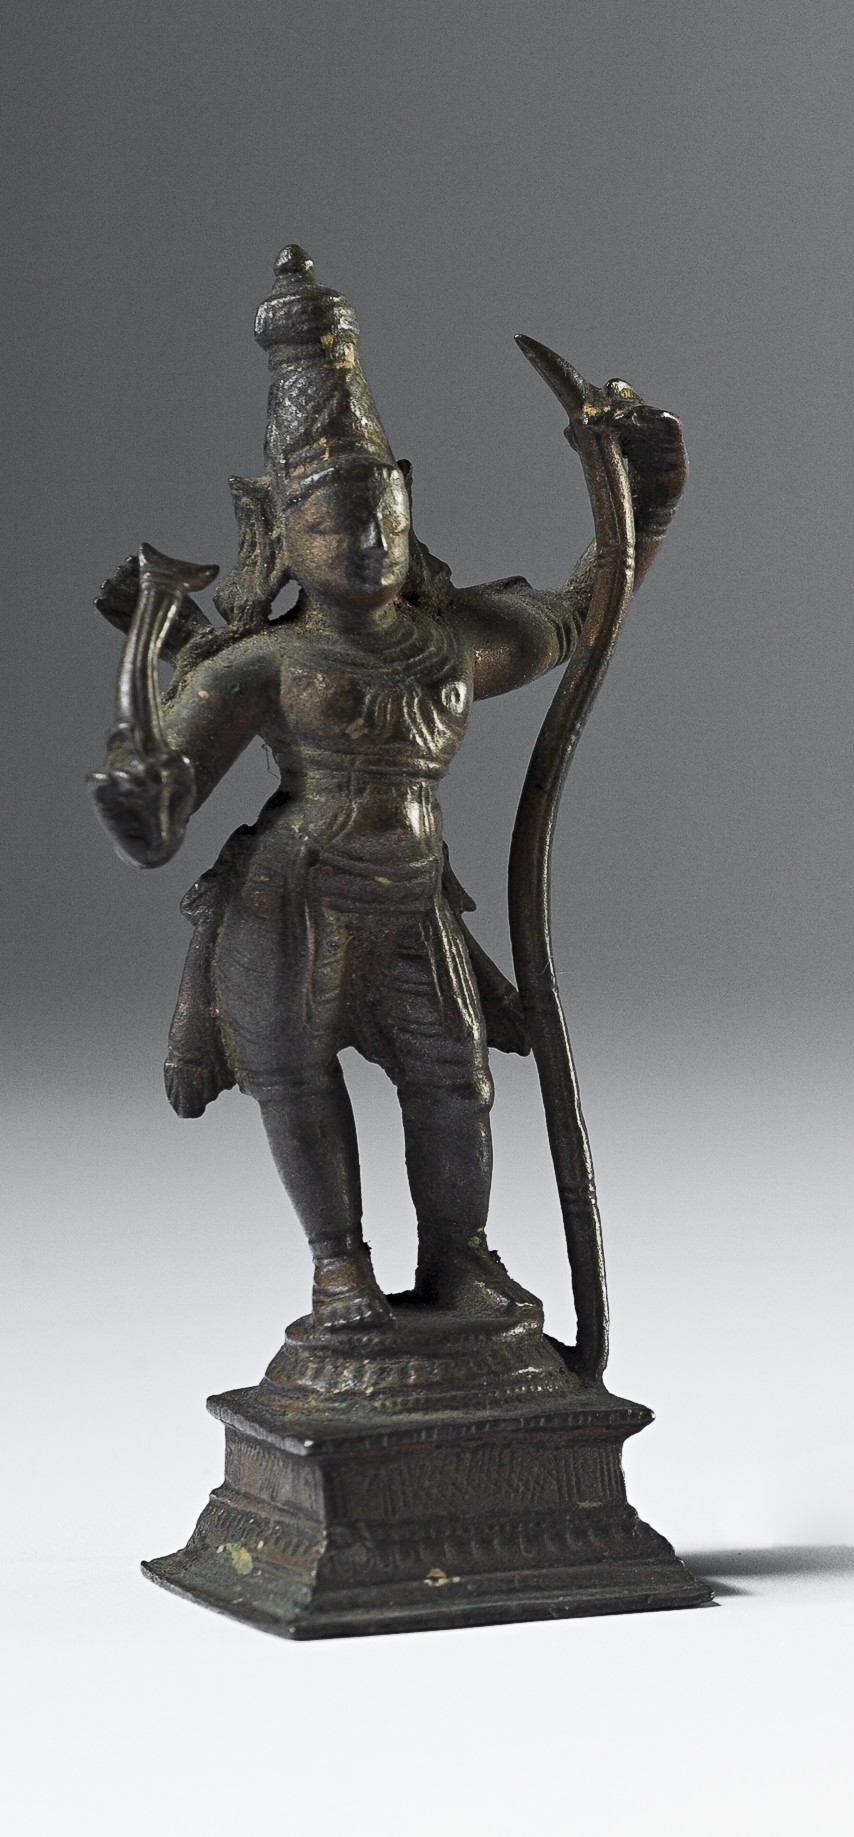 Krishna danse sur le serpent. Inde. Statuette en bronze, hauteur 9 cm. Lyon, musée des Confluences.